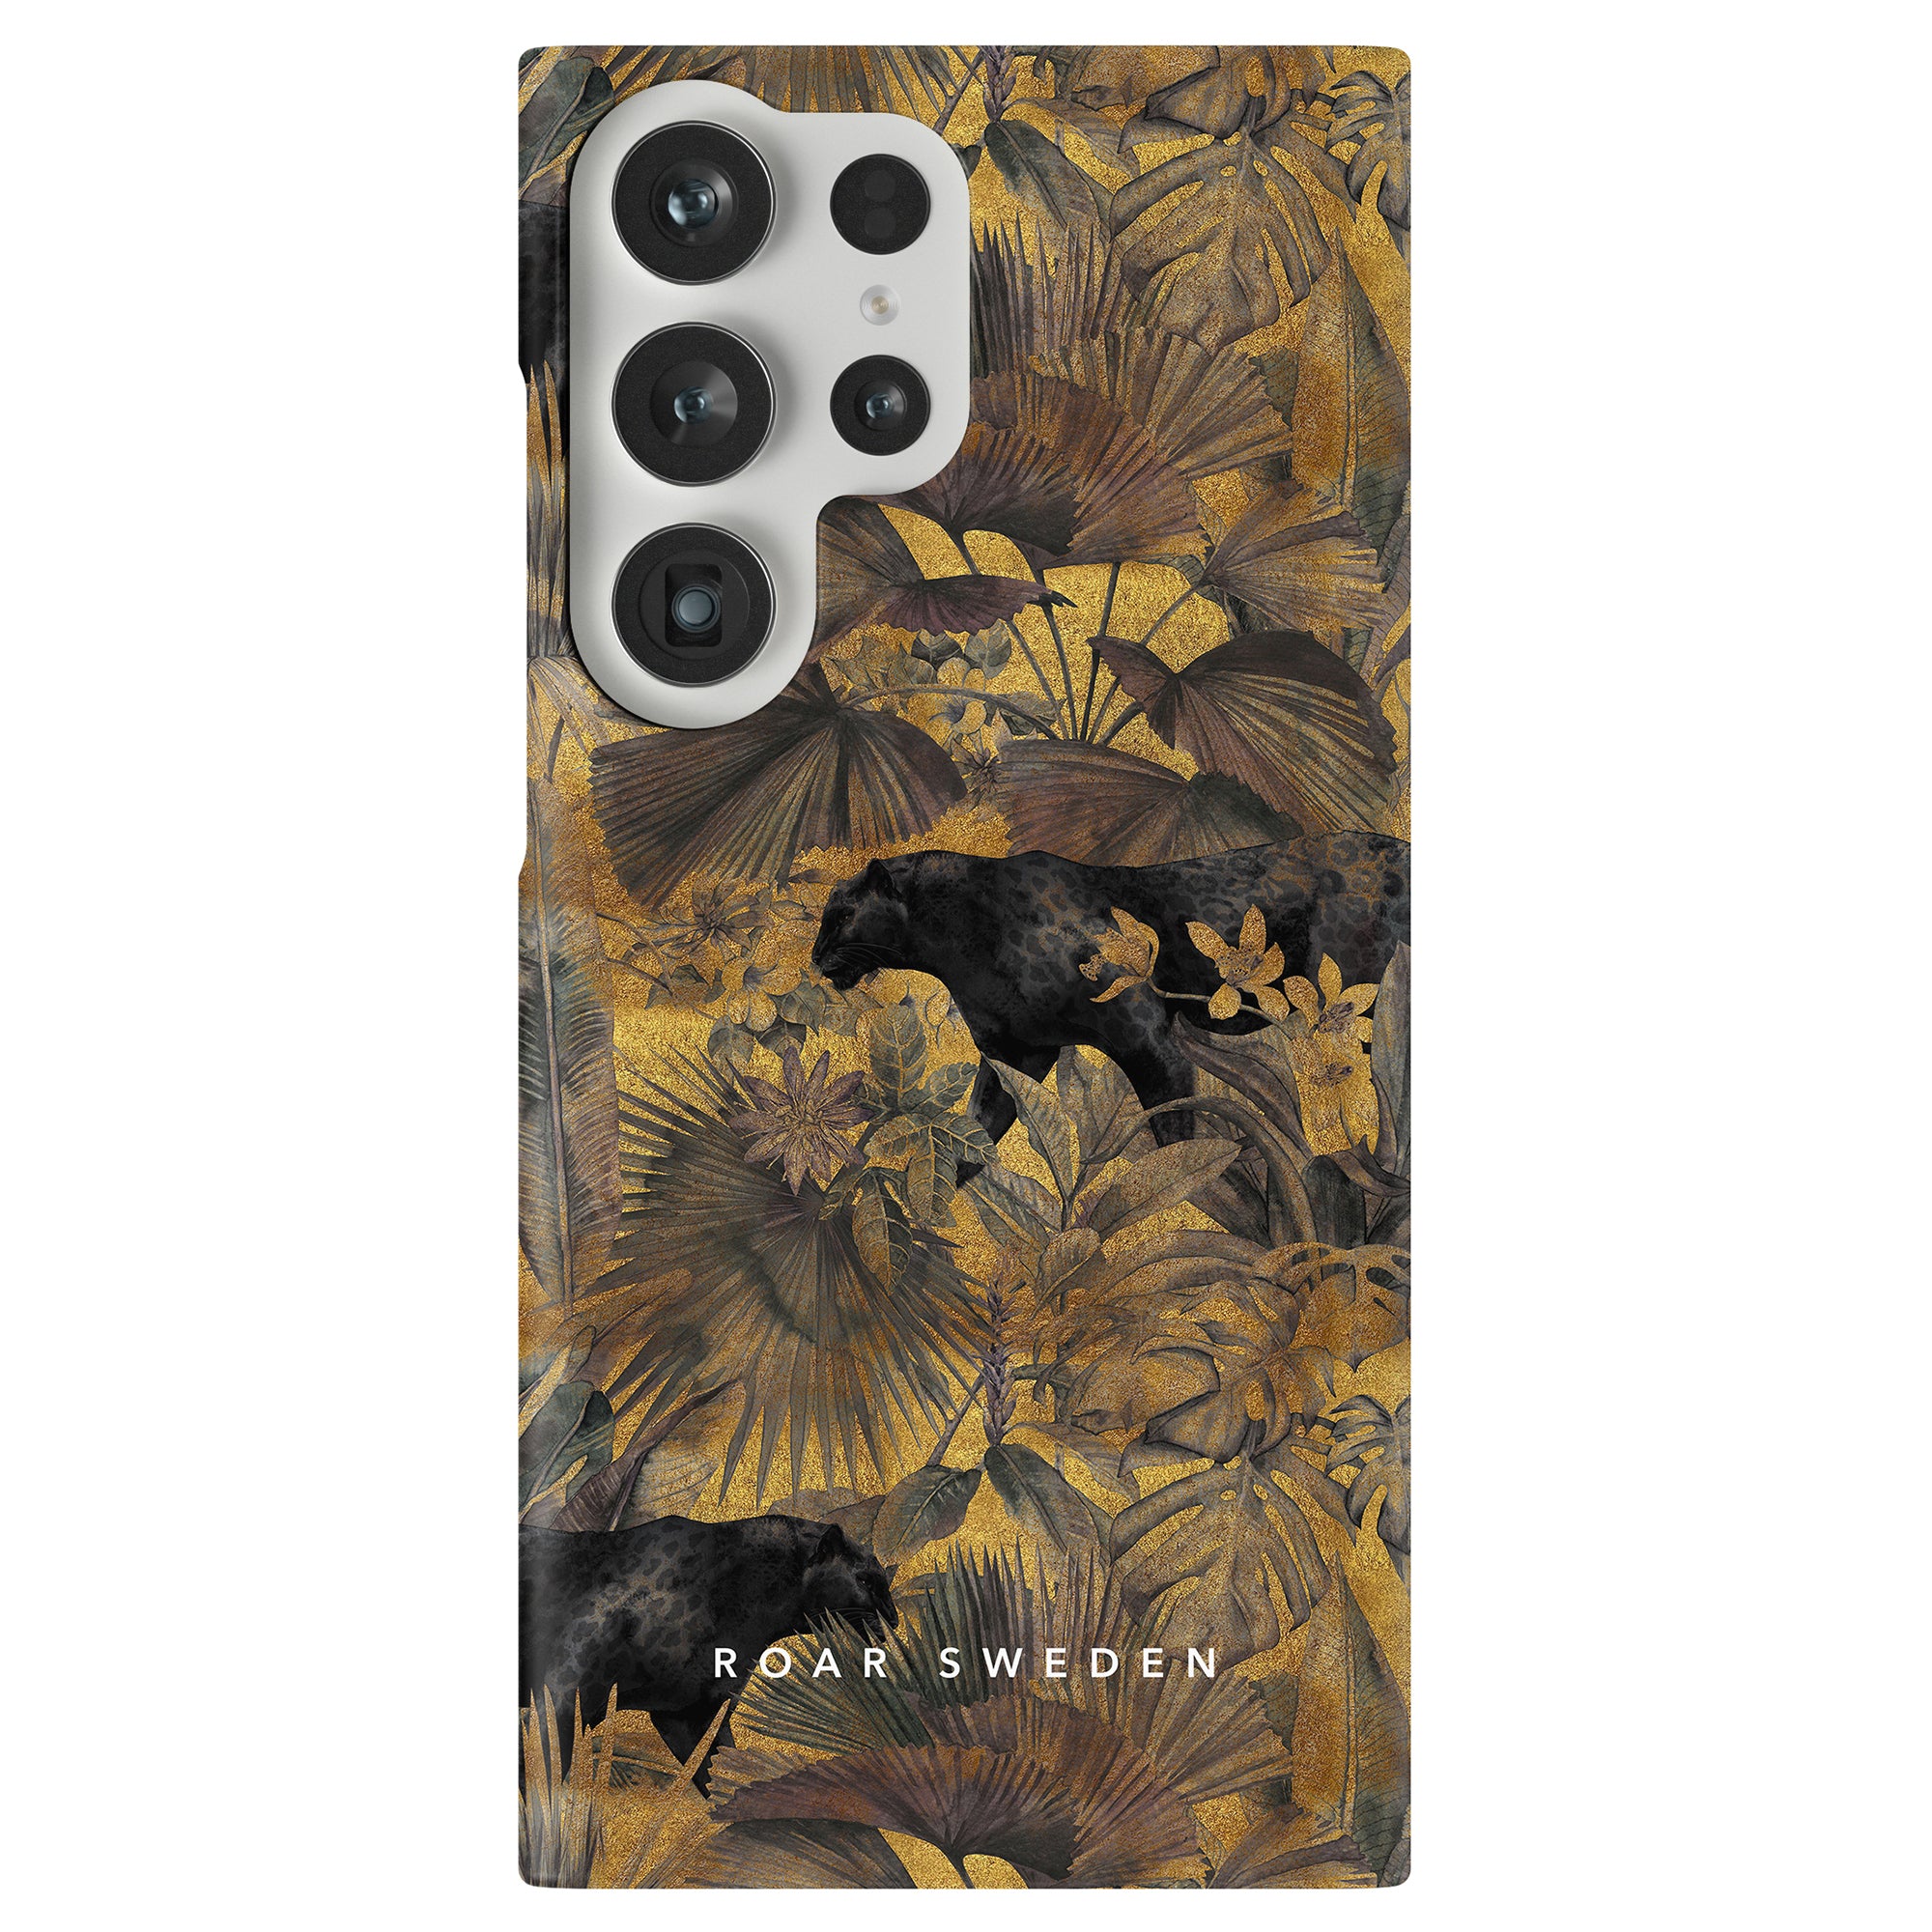 Ett svart och guld blommigt telefonfodral för iPhone eller Samsung som heter "Hunter - Slim case".